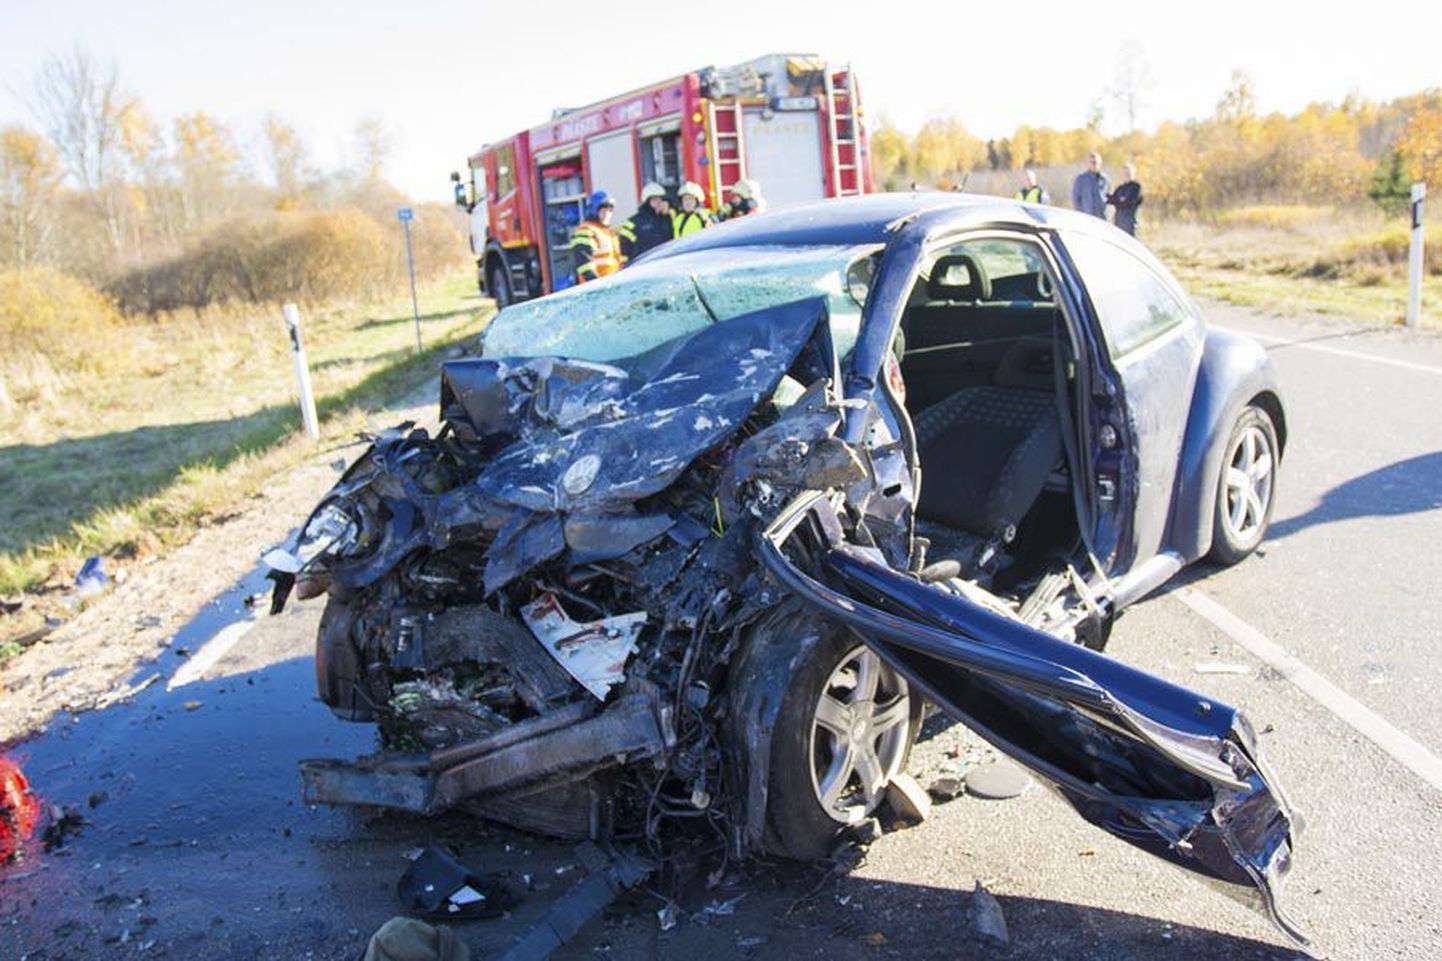 Eelmise kuu keskel juhtus Viljandi–Tartu maanteel raske liiklusõnnetus, milles sai viga neli inimest. Esiplaanil on Volkswagen New Beetle, mille omanik tegi asjade kadumise kohta avalduse.